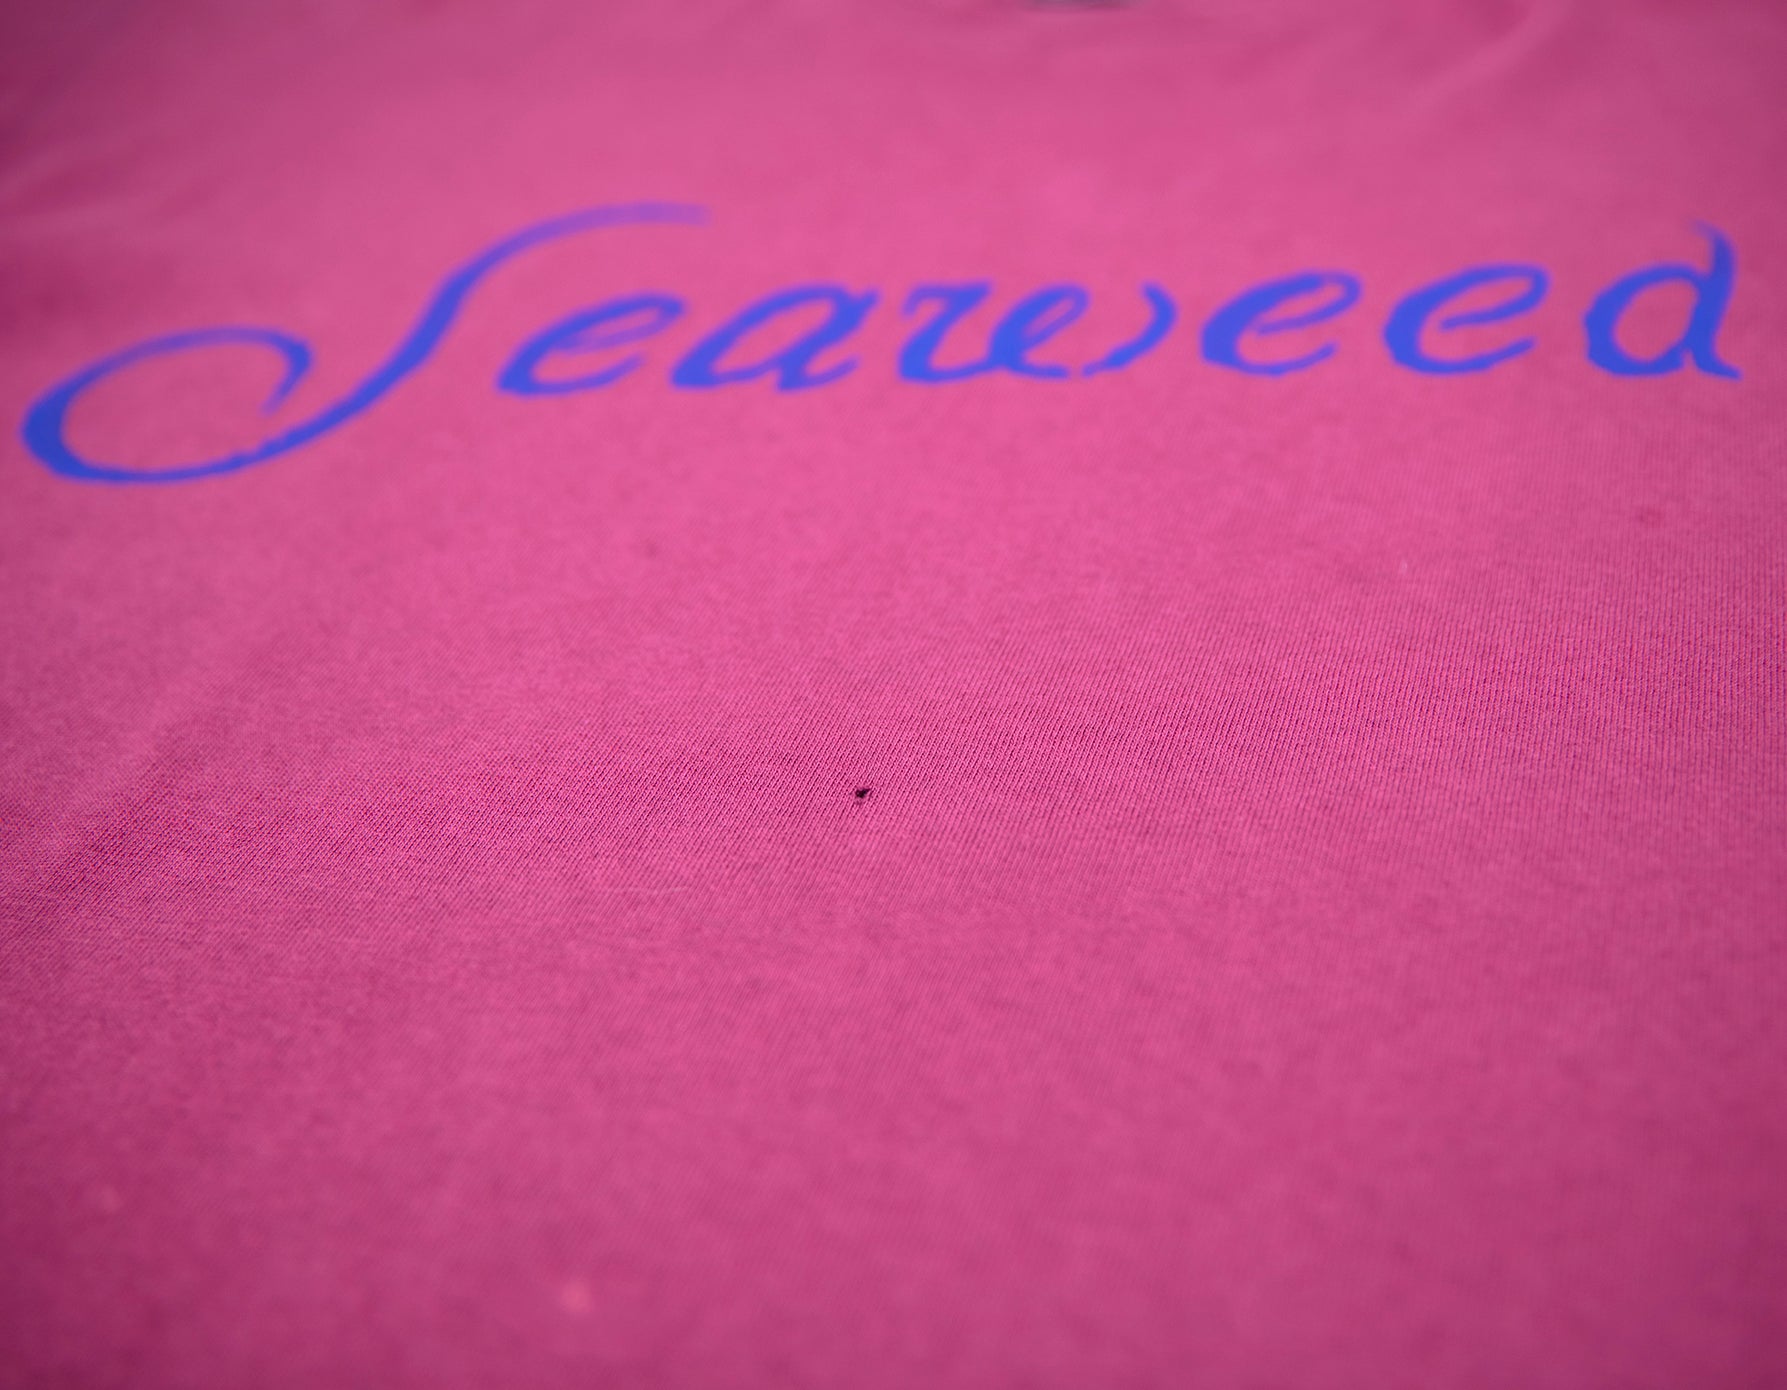 Seaweed - 1993 Four Tour Shirt Size XL